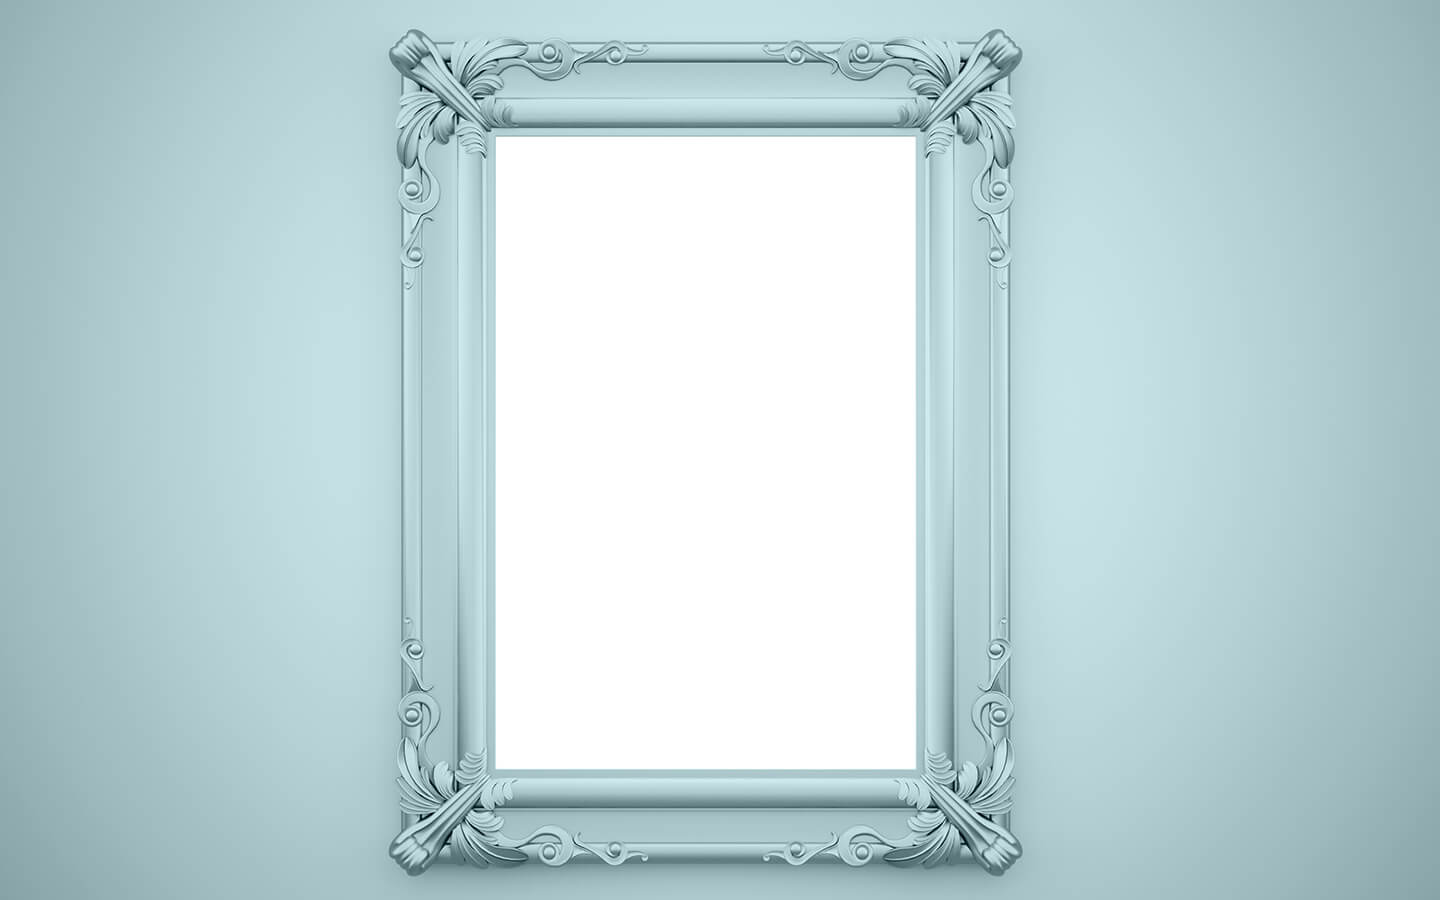 المرآة في المنام